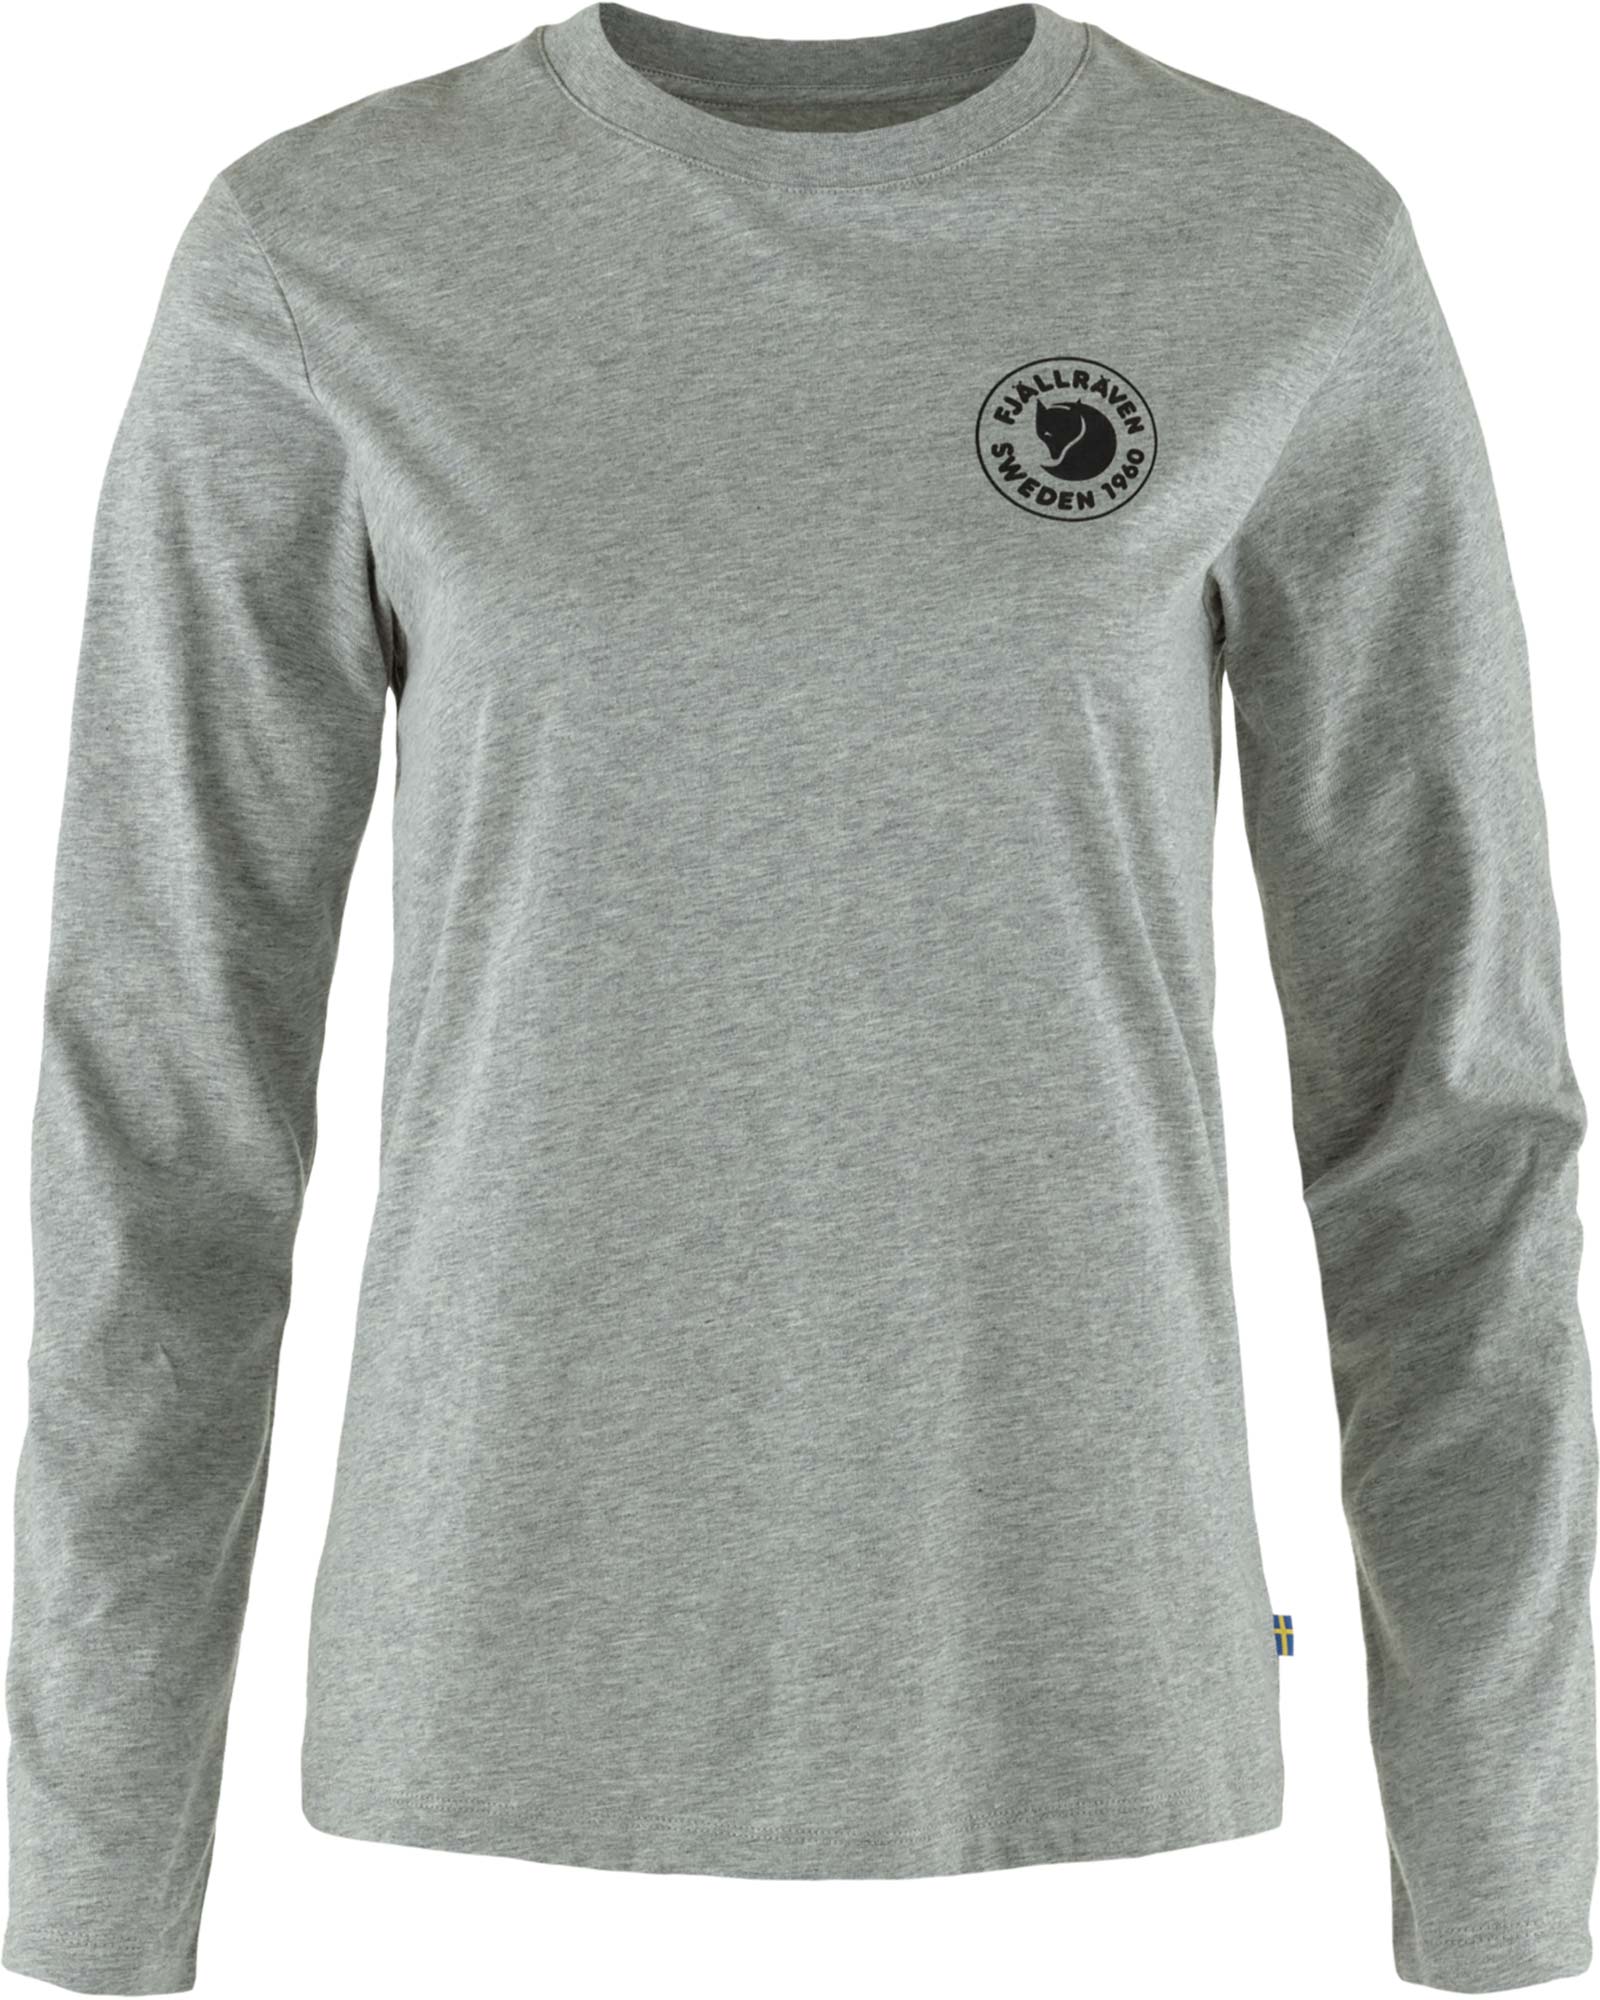 Fjallraven Women’s 1960 Logo Long Sleeved T Shirt - Grey Melange L